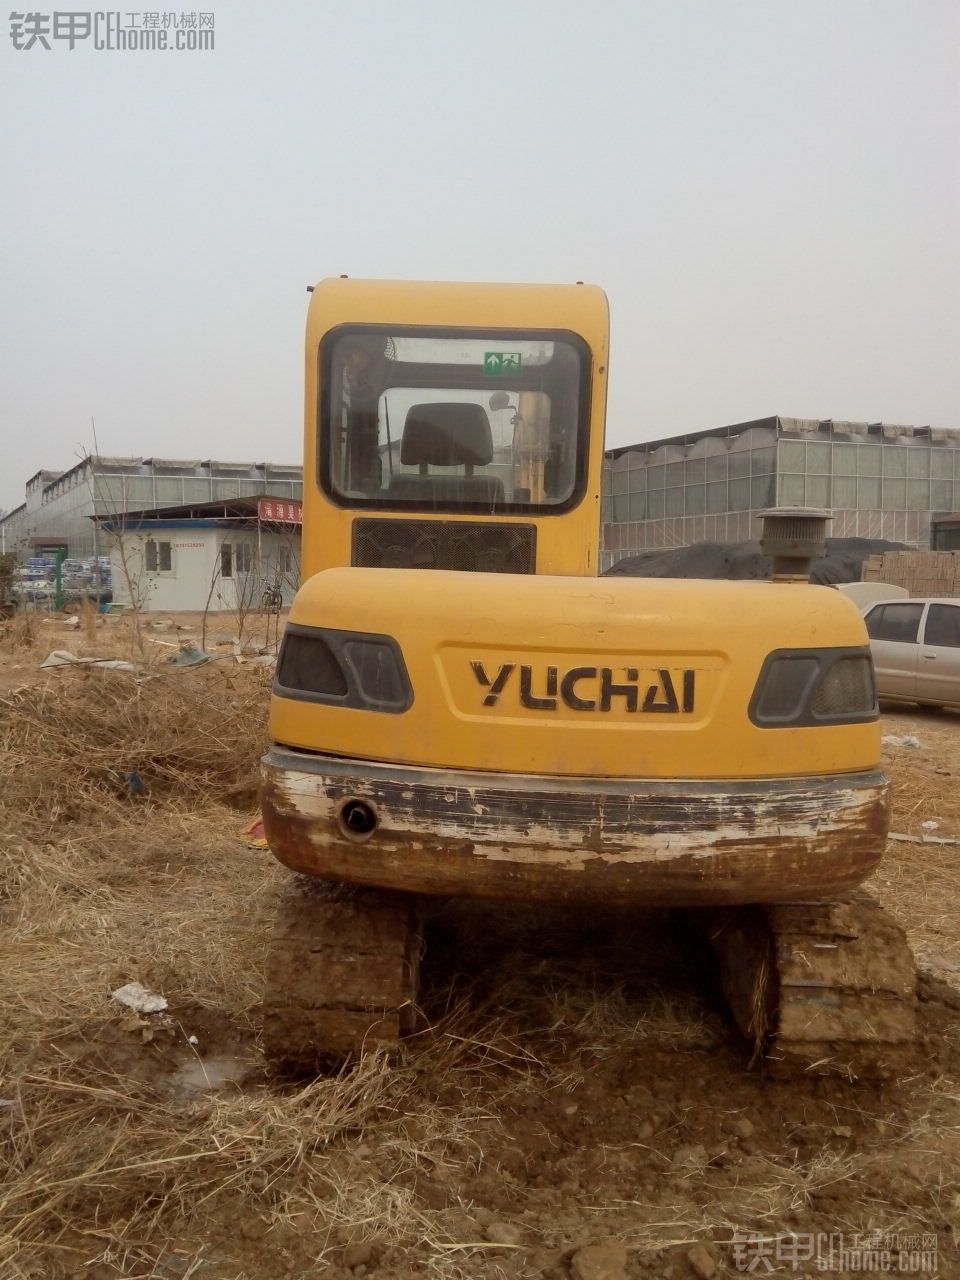 玉柴 YC60-8 二手挖掘机价格 12.5万 4900小时